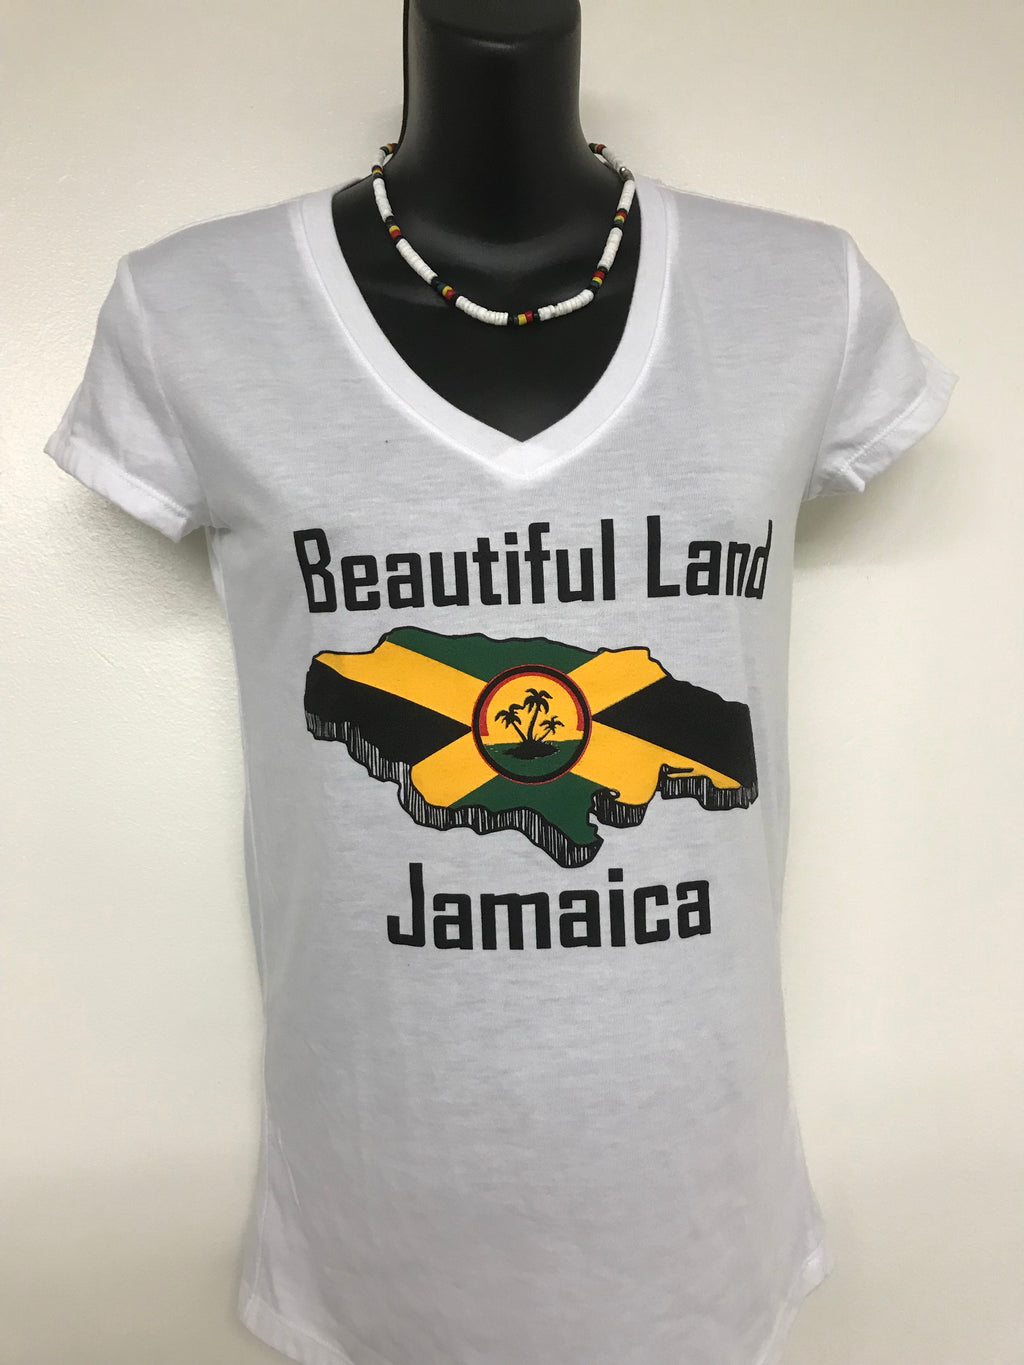 Jamaican woman’s T-shirt. Beautiful land Jamaica